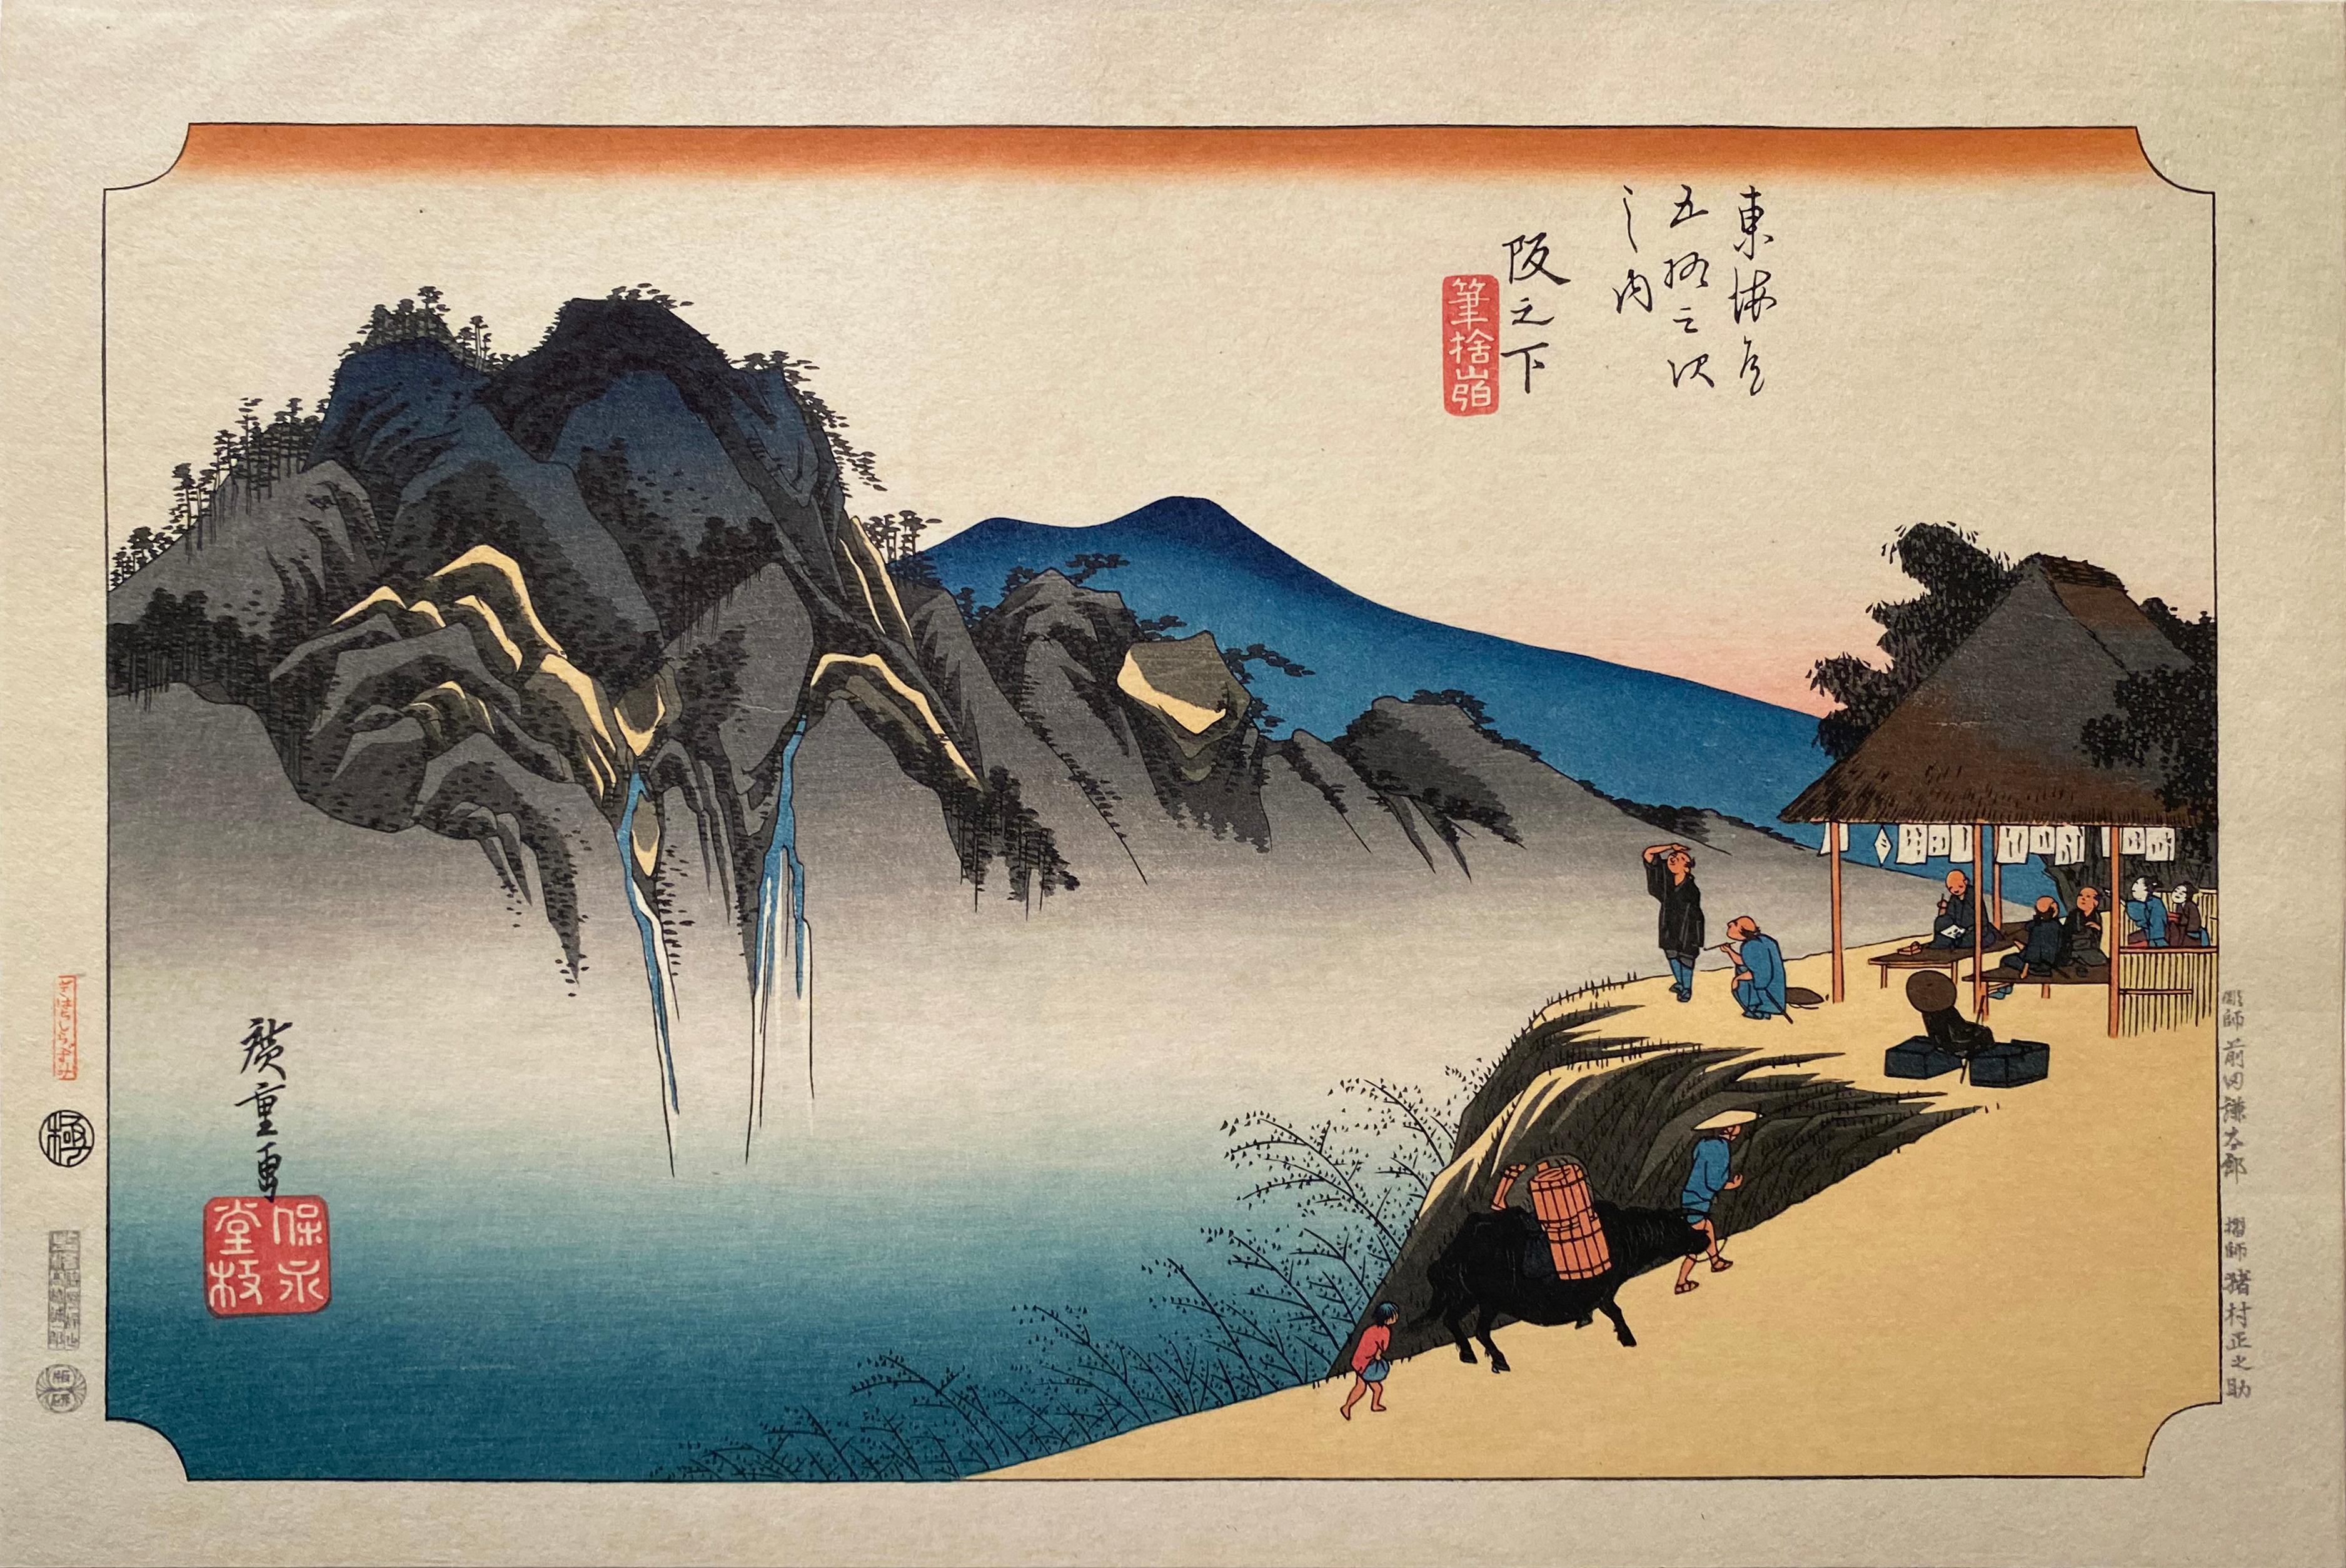 Fudesute Mountain", nach Utagawa Hiroshige 歌川廣重, Ukiyo-e Holzschnitt, Tokaido